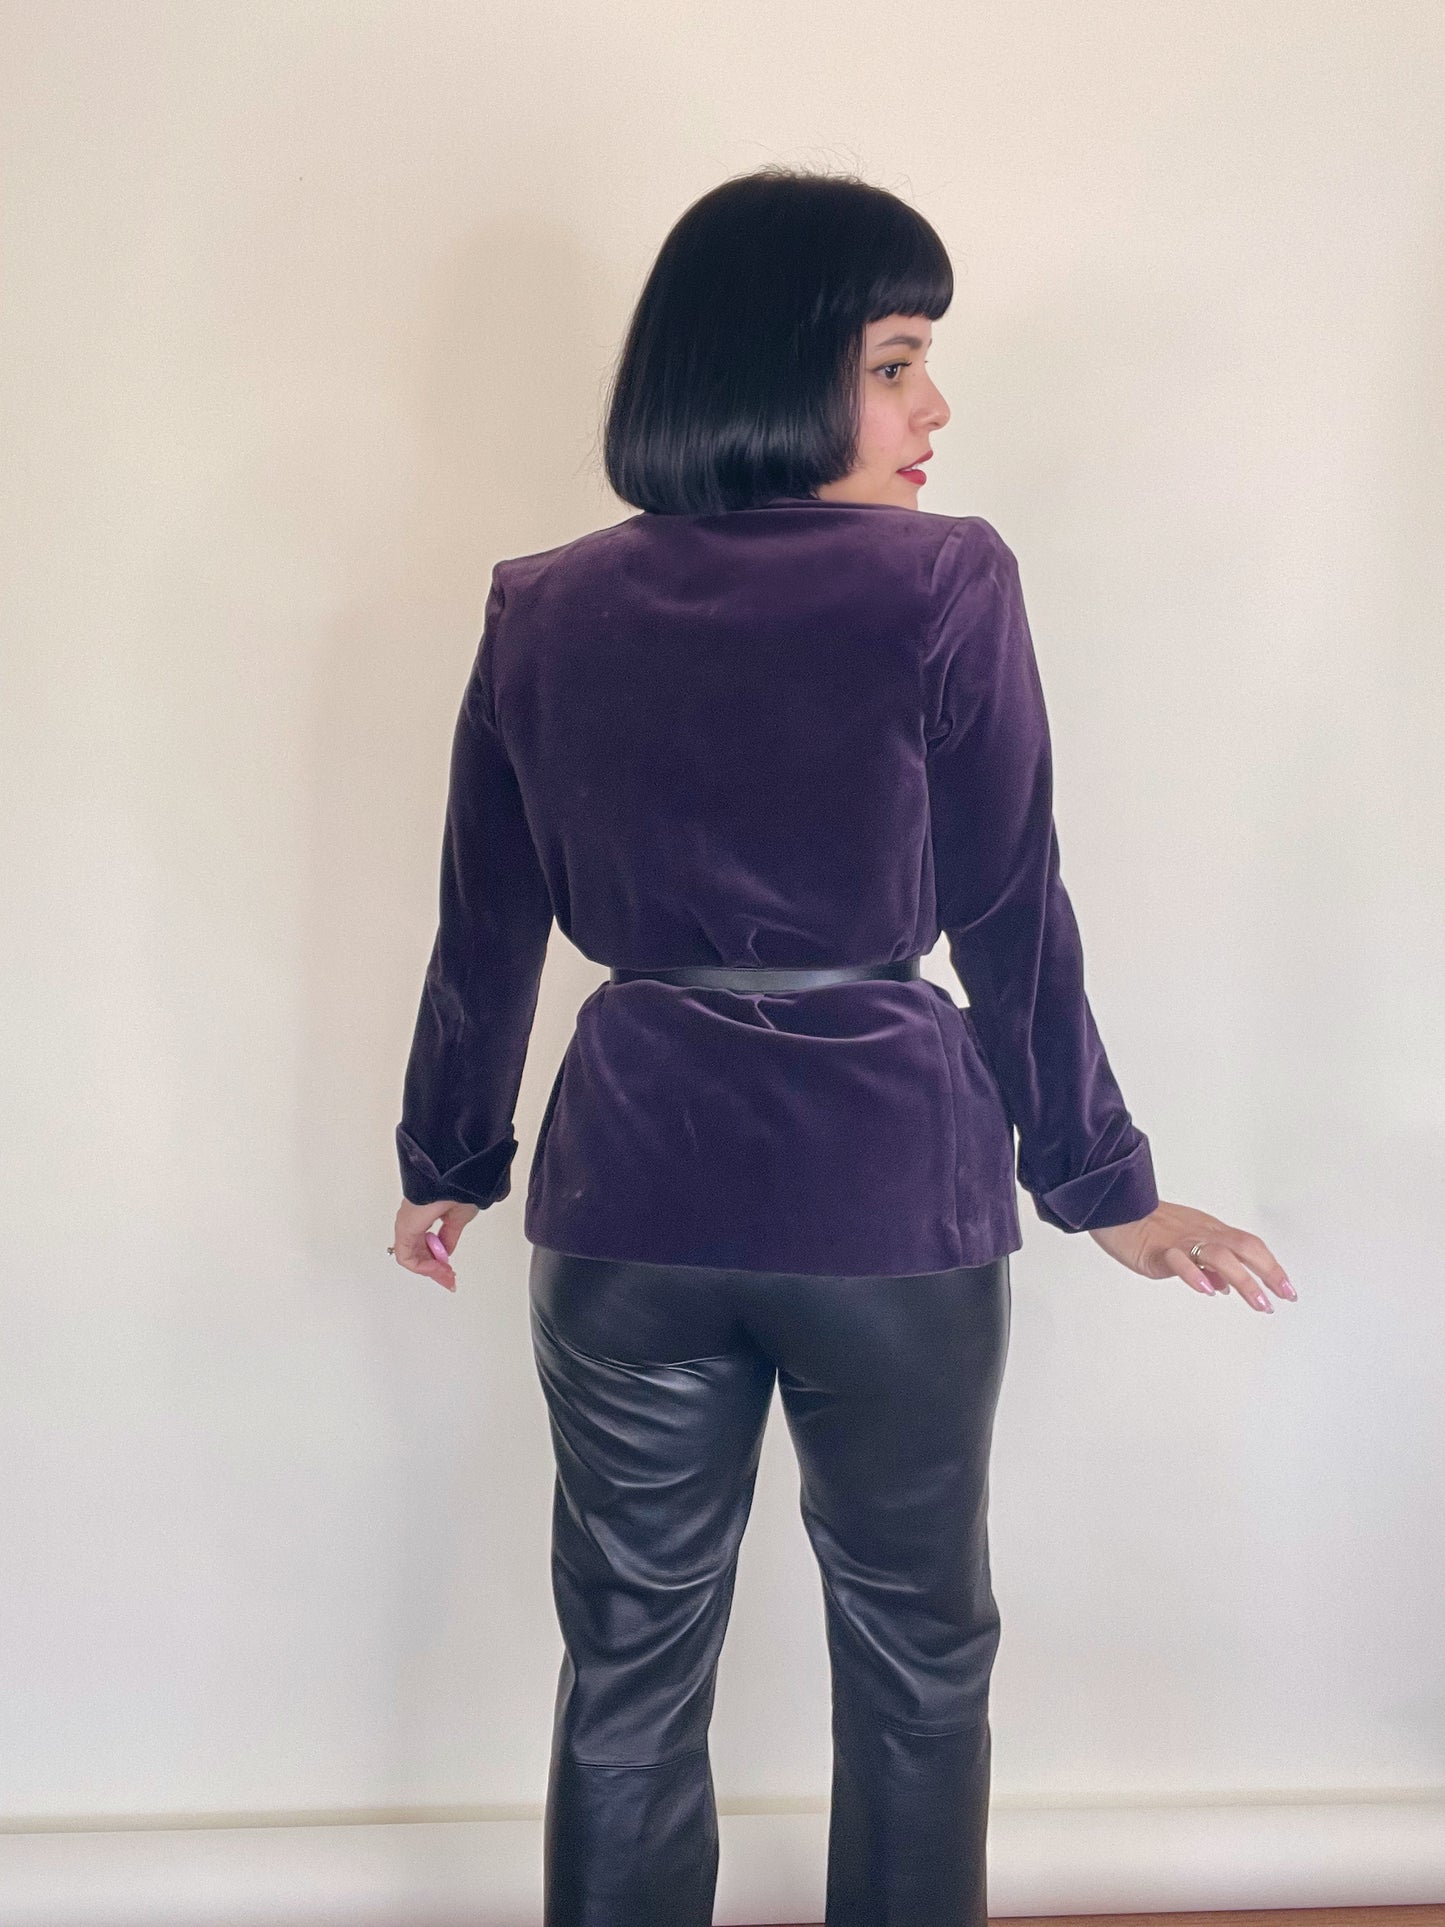 Vintage 70s 80s "I. Magnin" Grape Plum Purple Velvet Jacket Best Fits Sizes XS-M